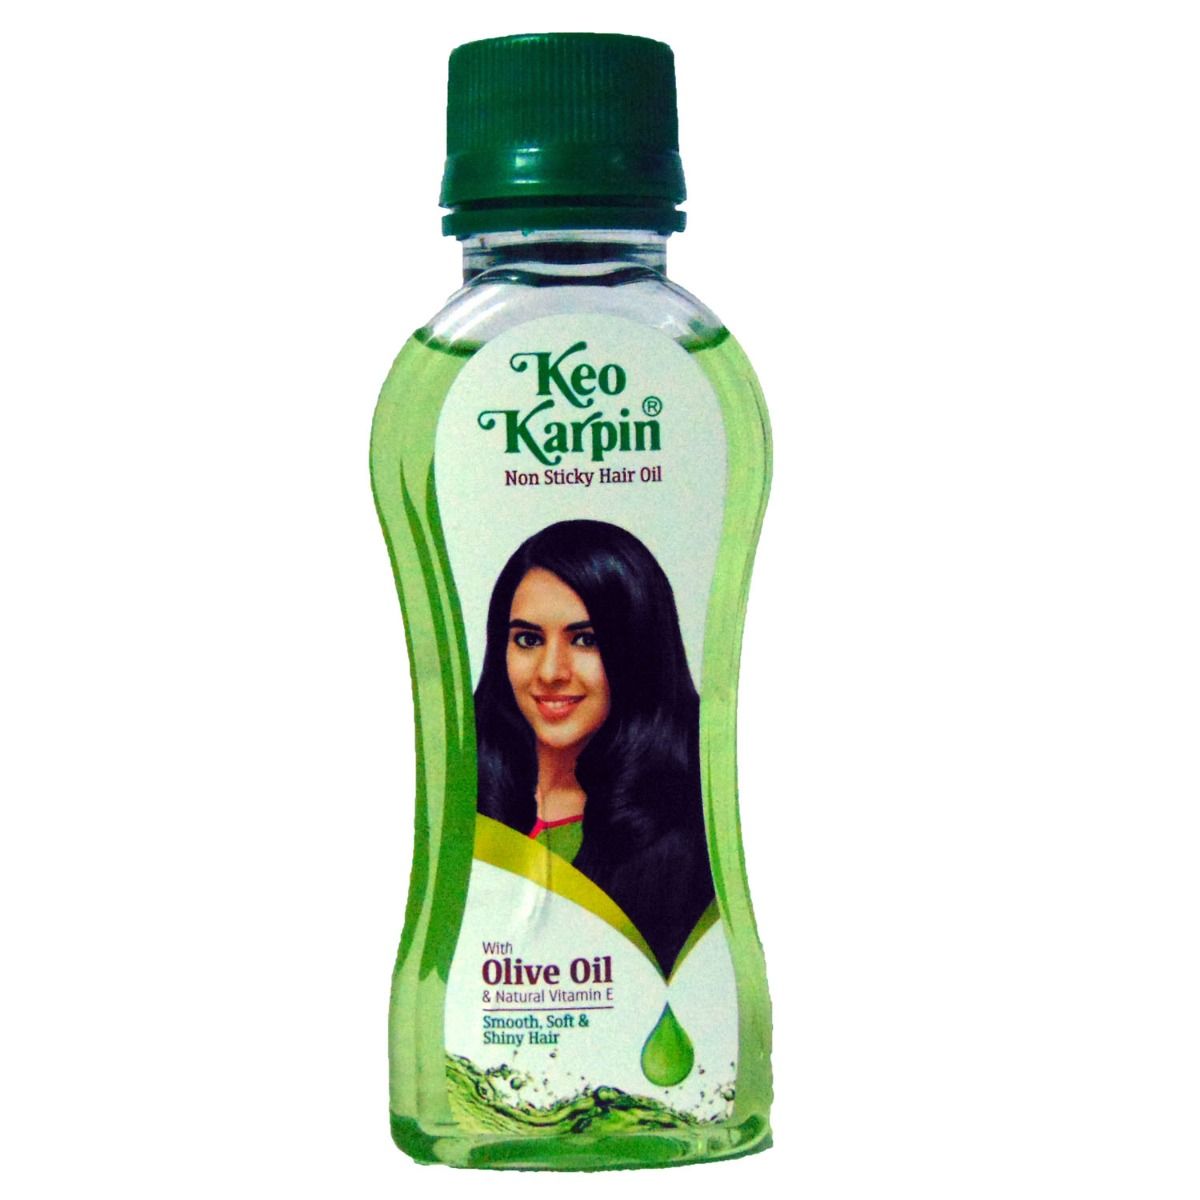 Buy Keo Karpin Non Sticky Hair Oil, 100 ml Online